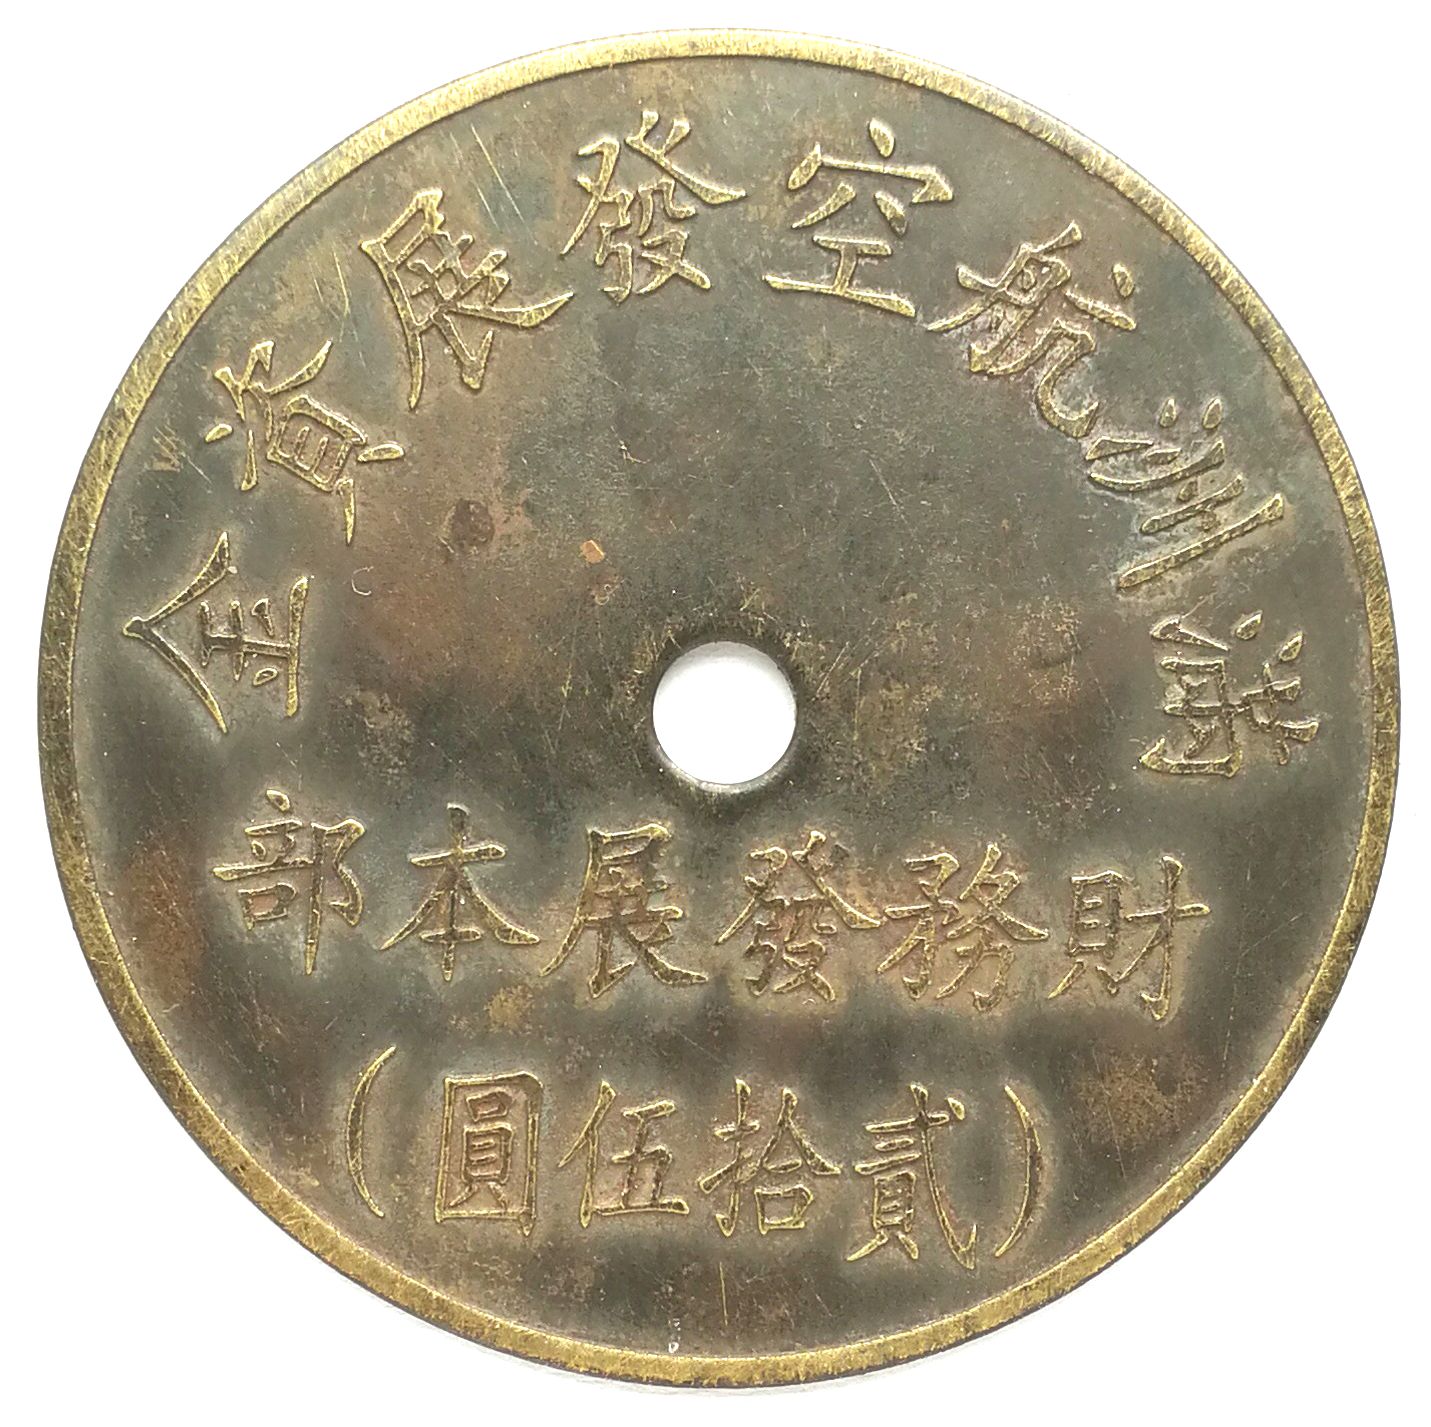 BT490, Manchukuo Aviation Development Fund, 25 Yen Token, 1945